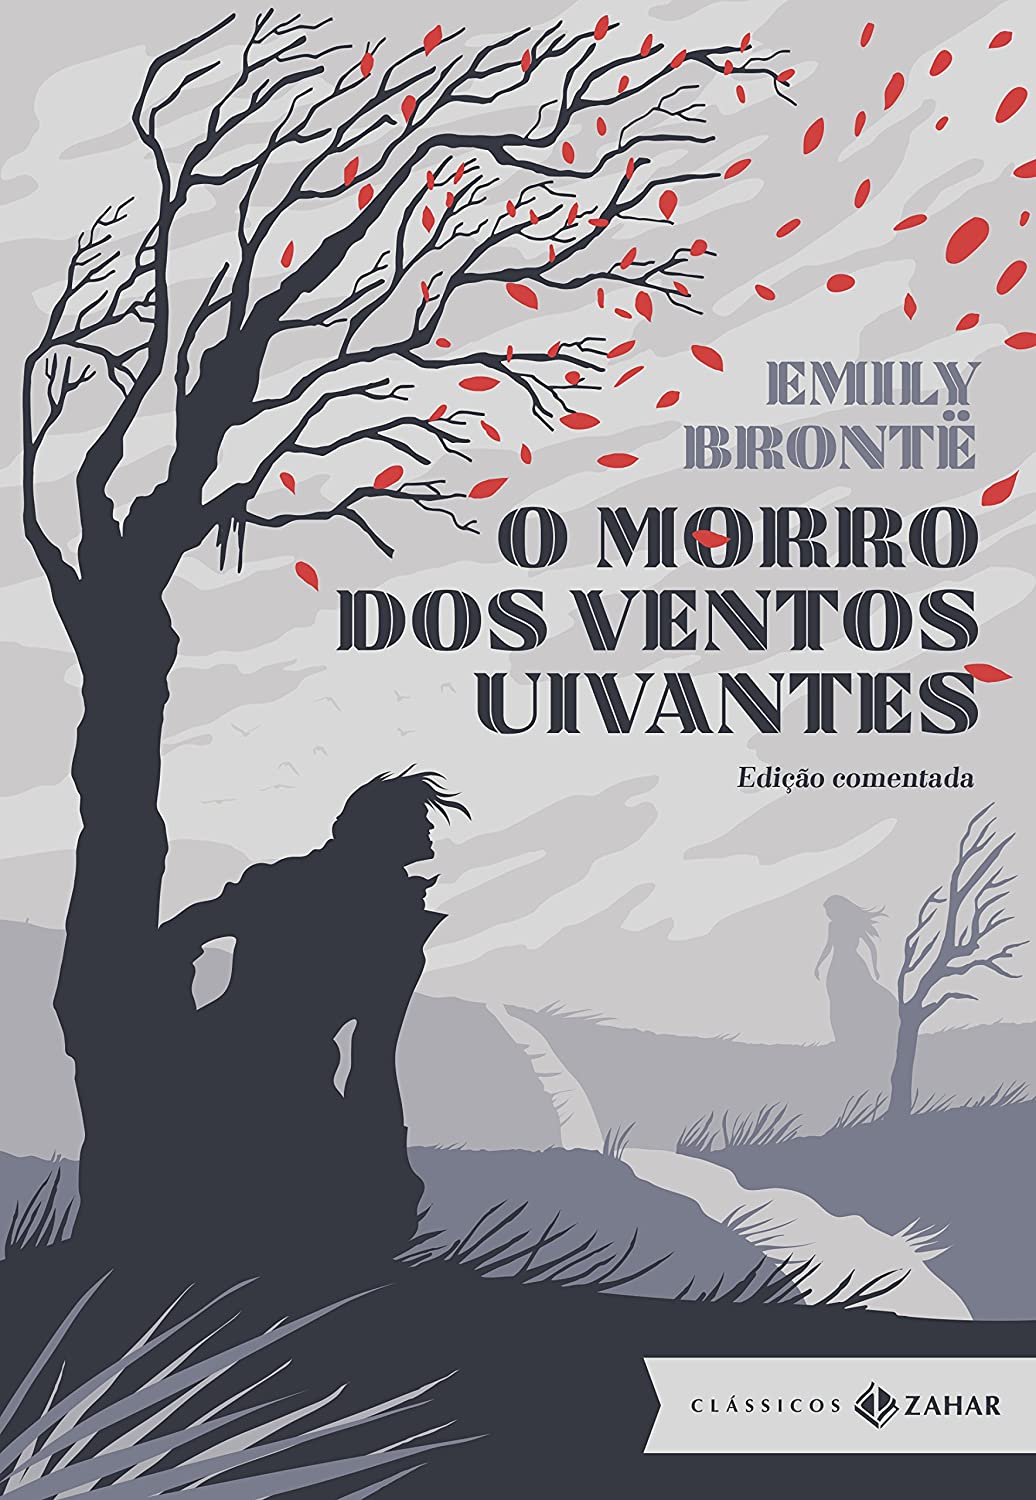 Emily Brontë, Adriana Lisboa: O Morro dos Ventos Uivantes (Hardcover, Português language, 2016, ‎Clássicos Zahar)